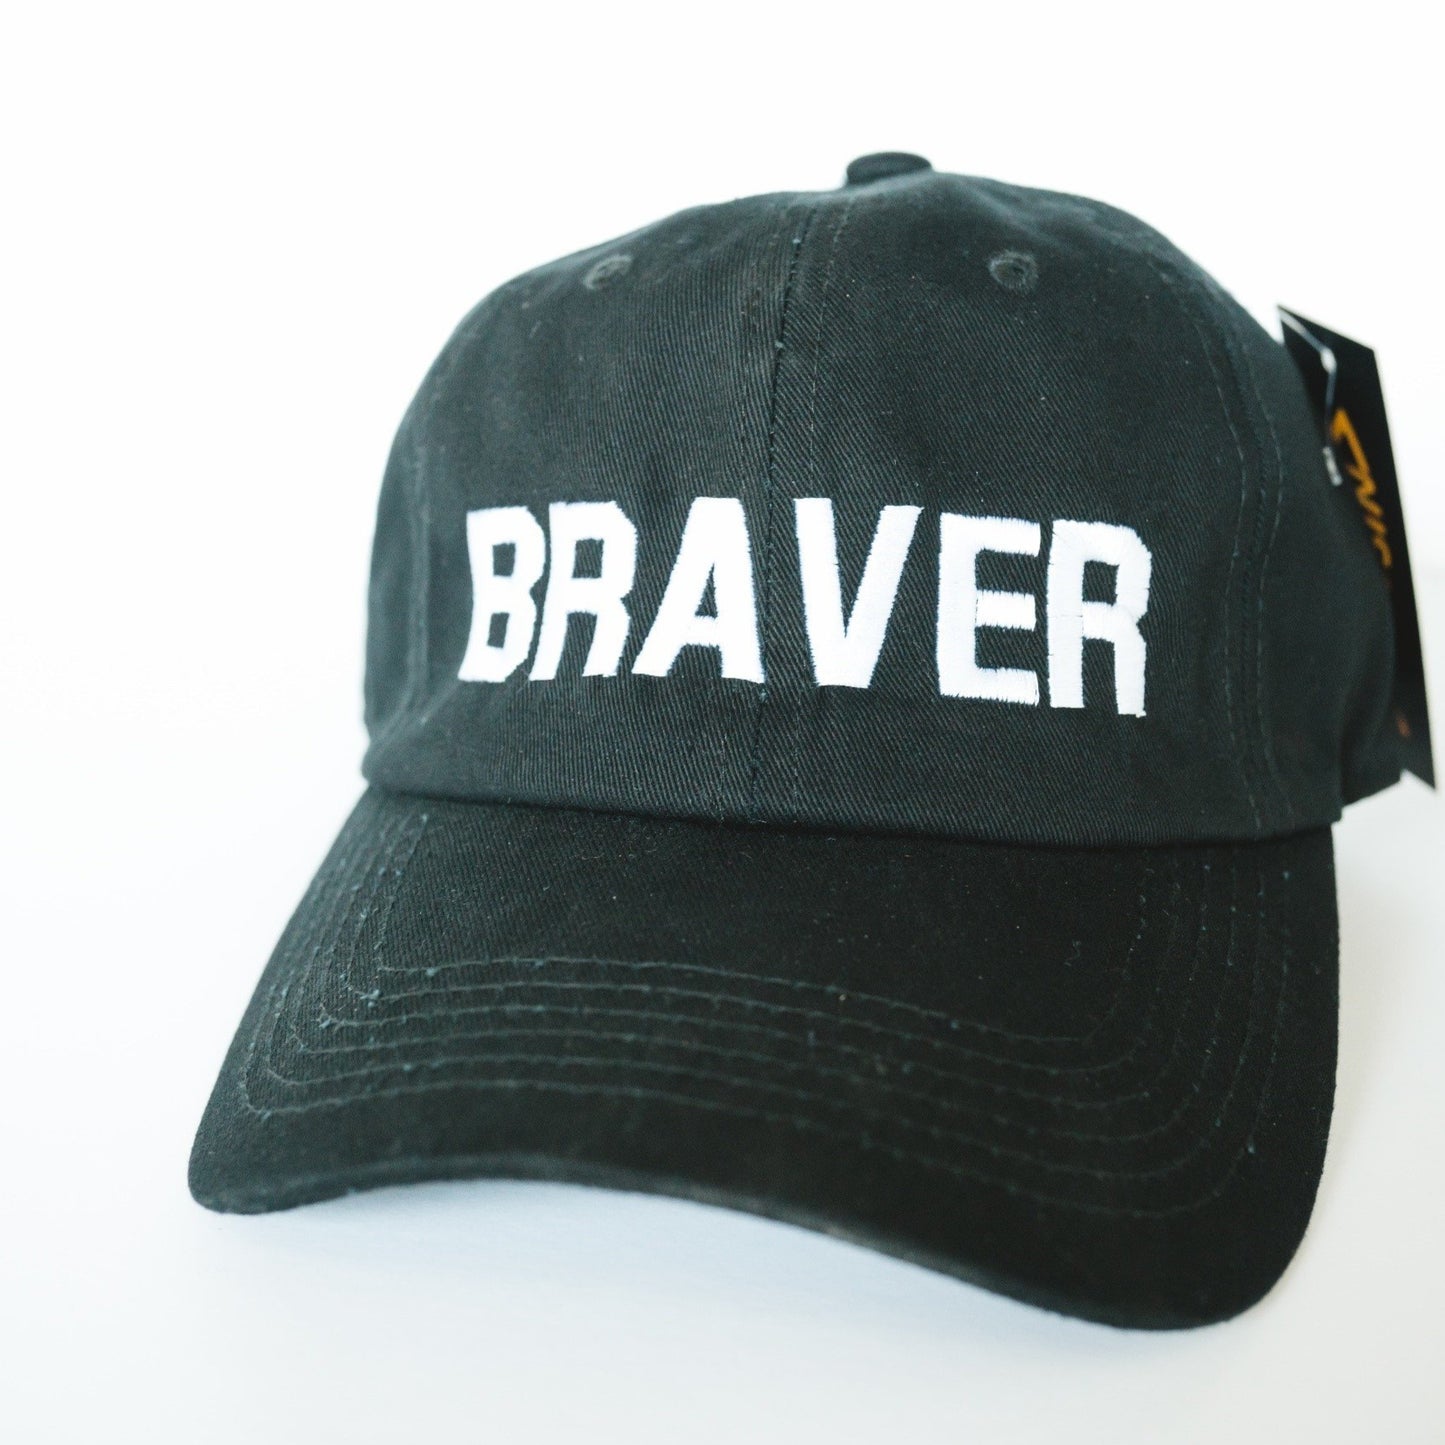 BRAVER Baseball Cap (Black)